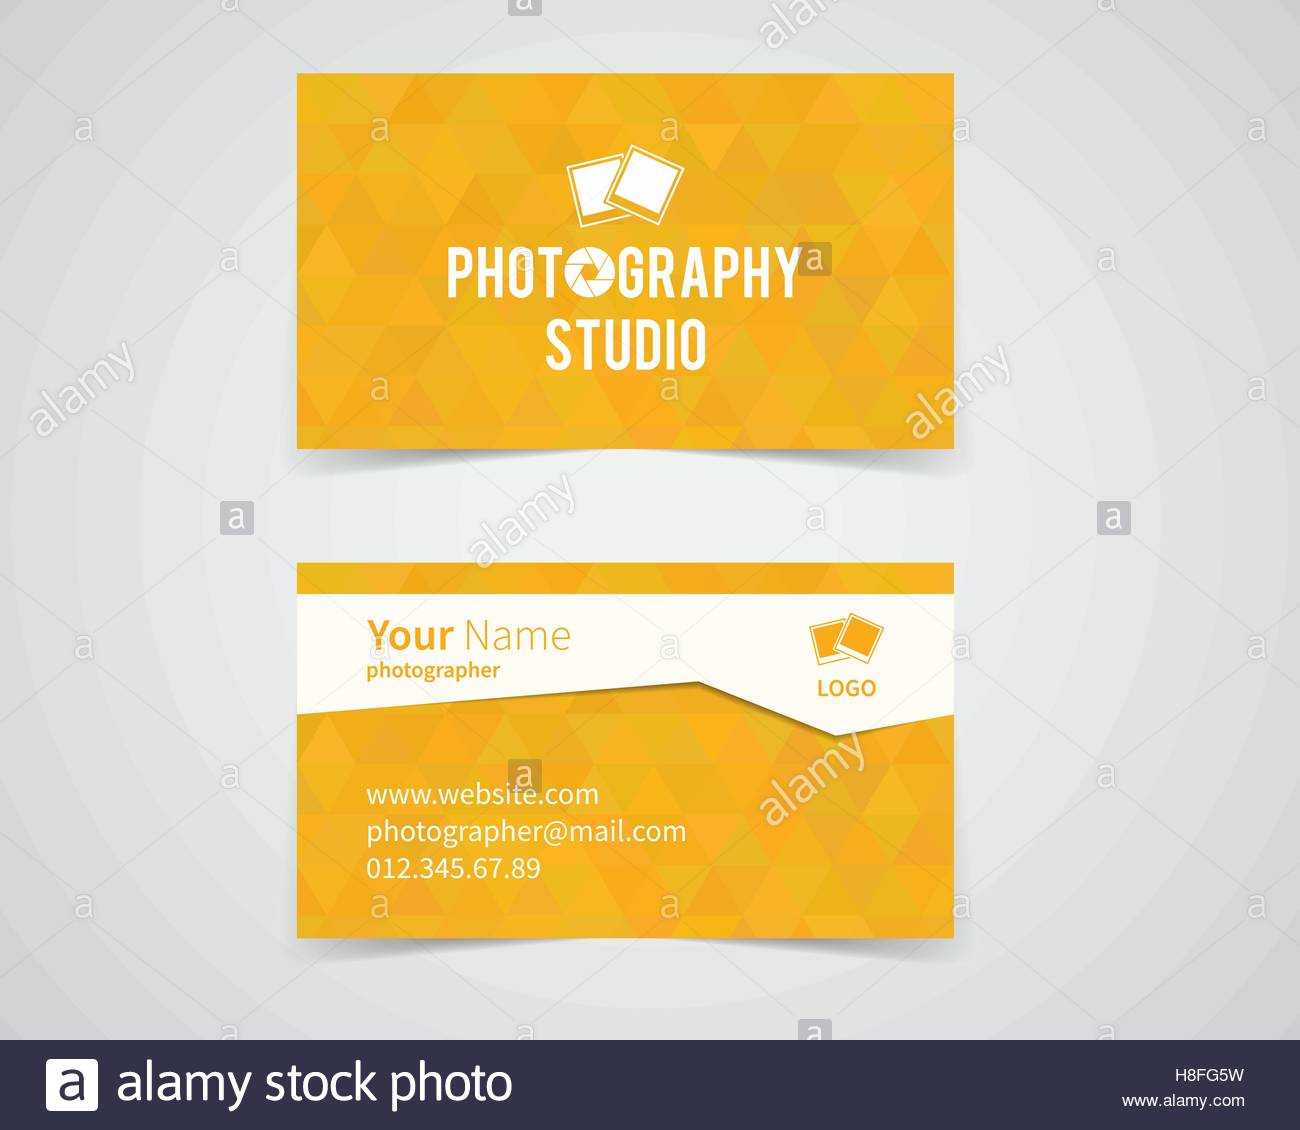 Modern Light Business Card Template For Photography Studio In Photographer Id Card Template